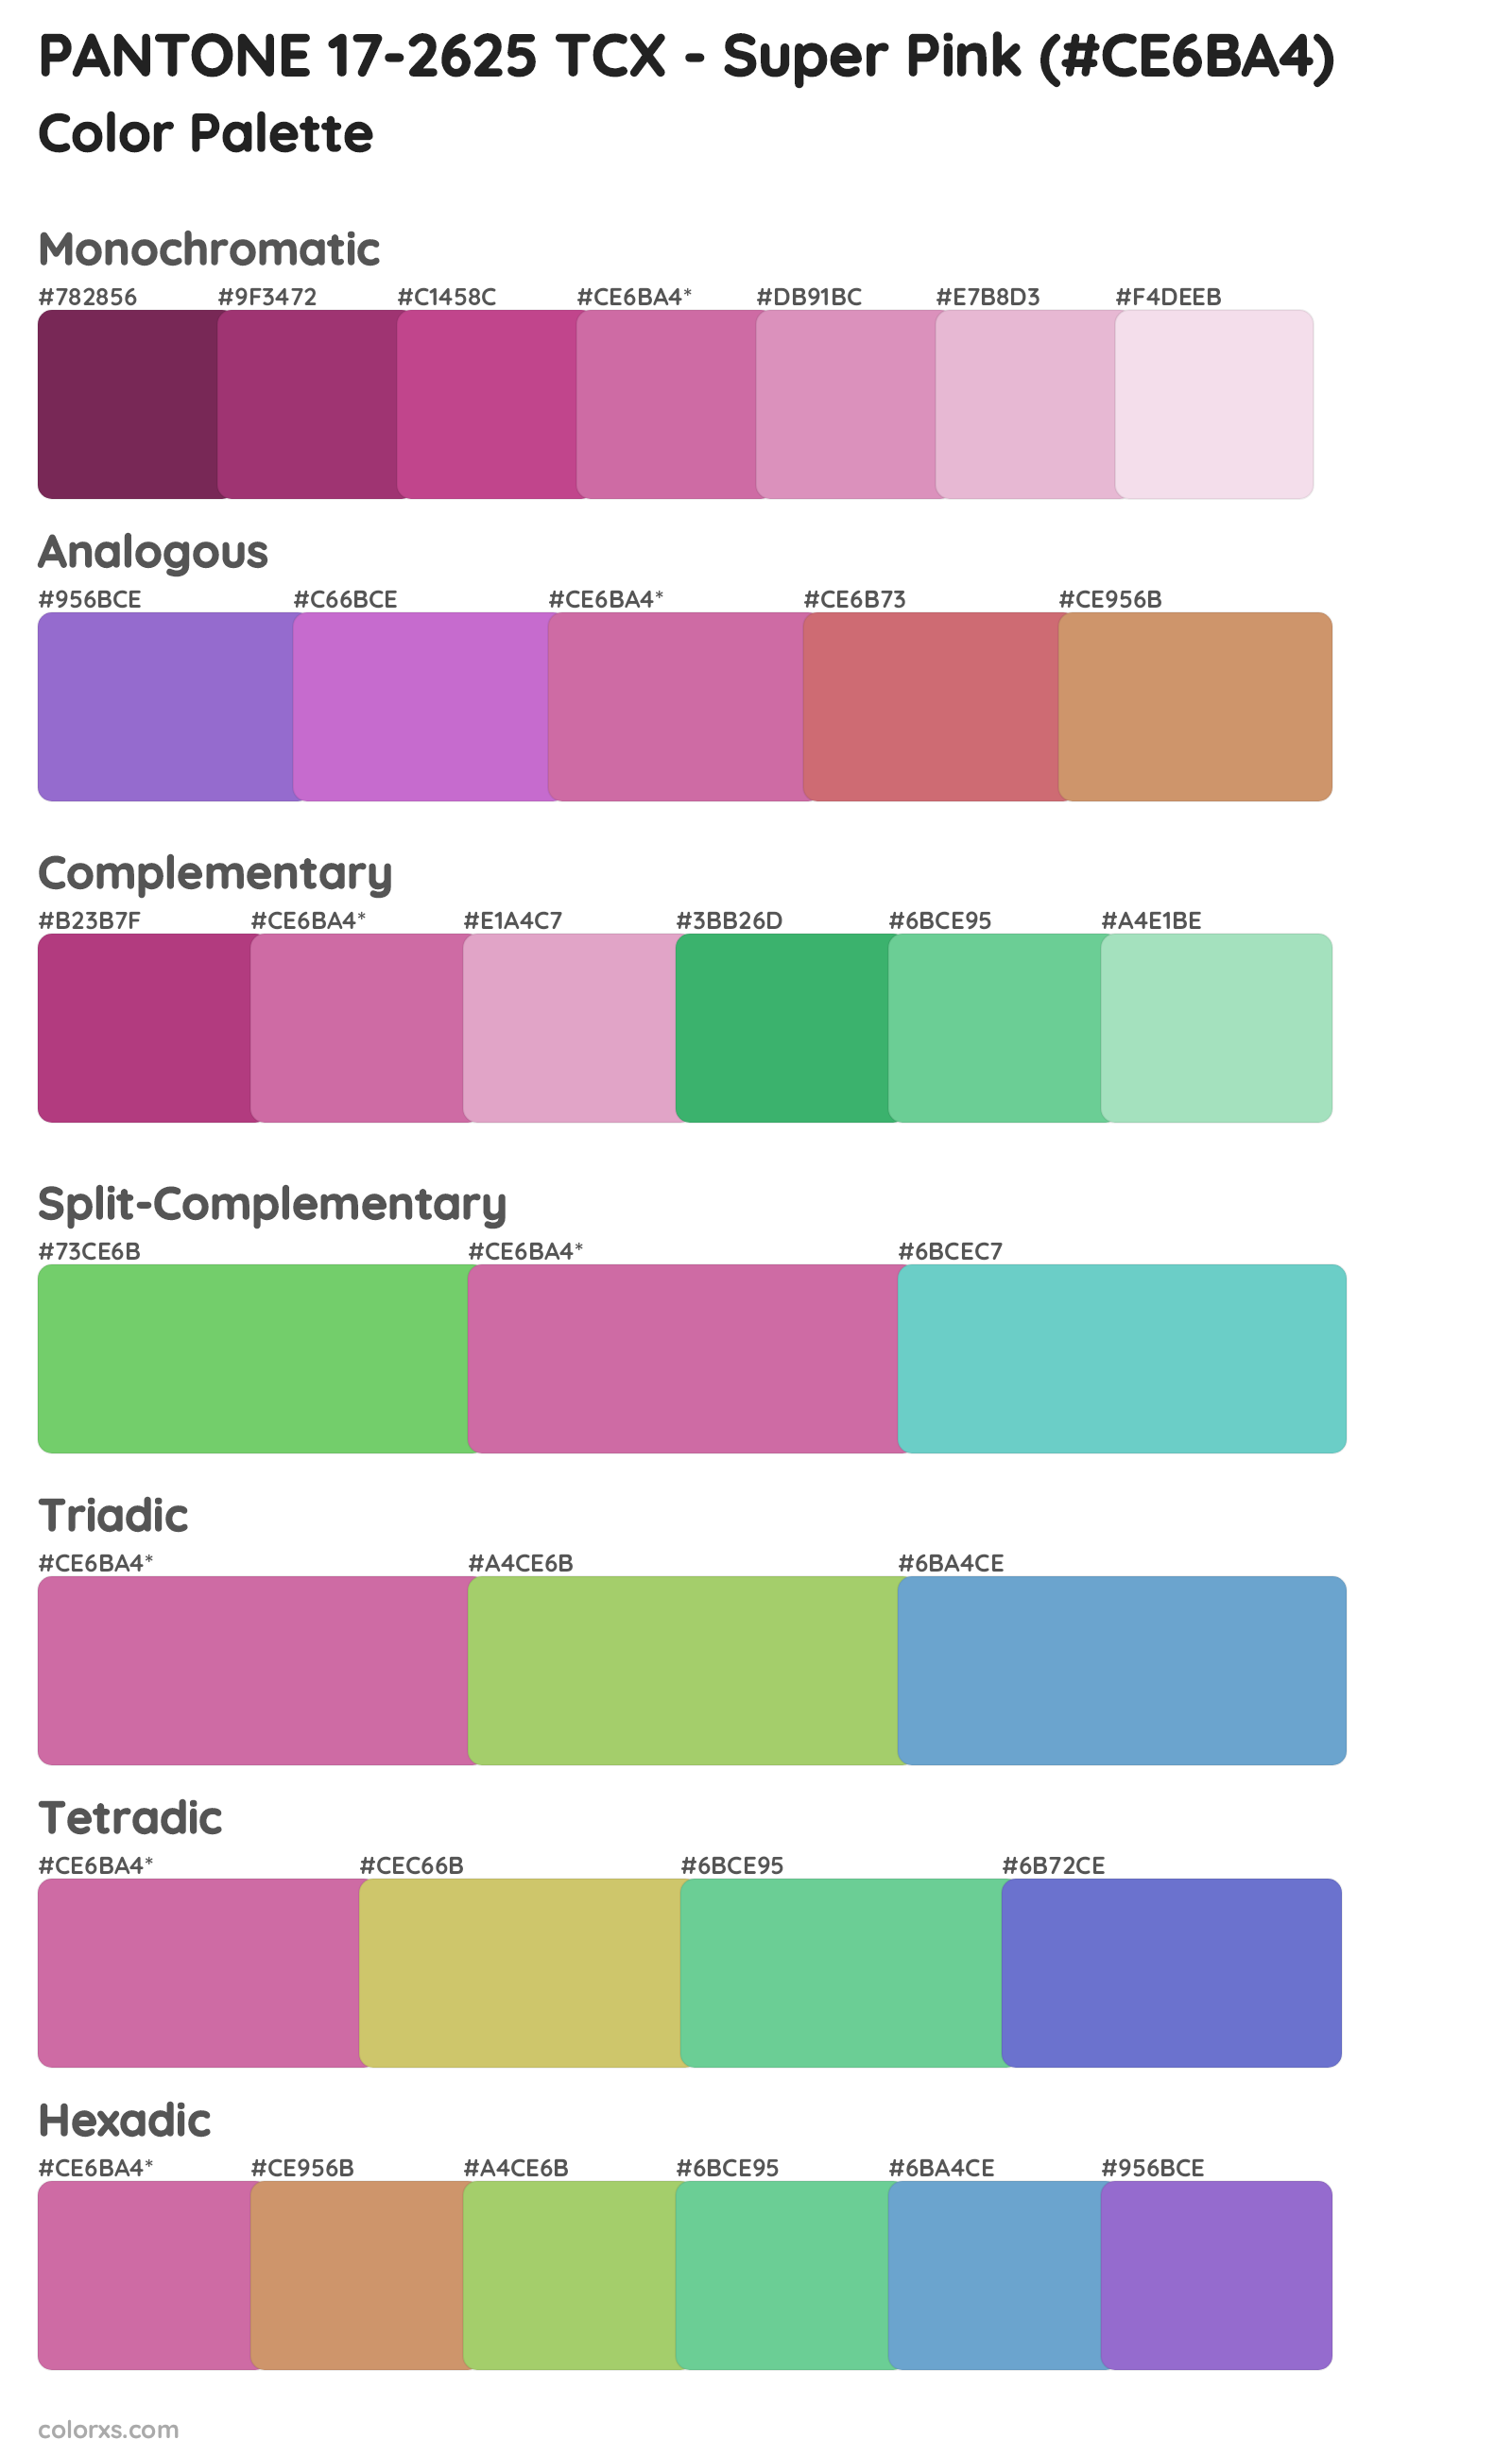 PANTONE 17-2625 TCX - Super Pink Color Scheme Palettes